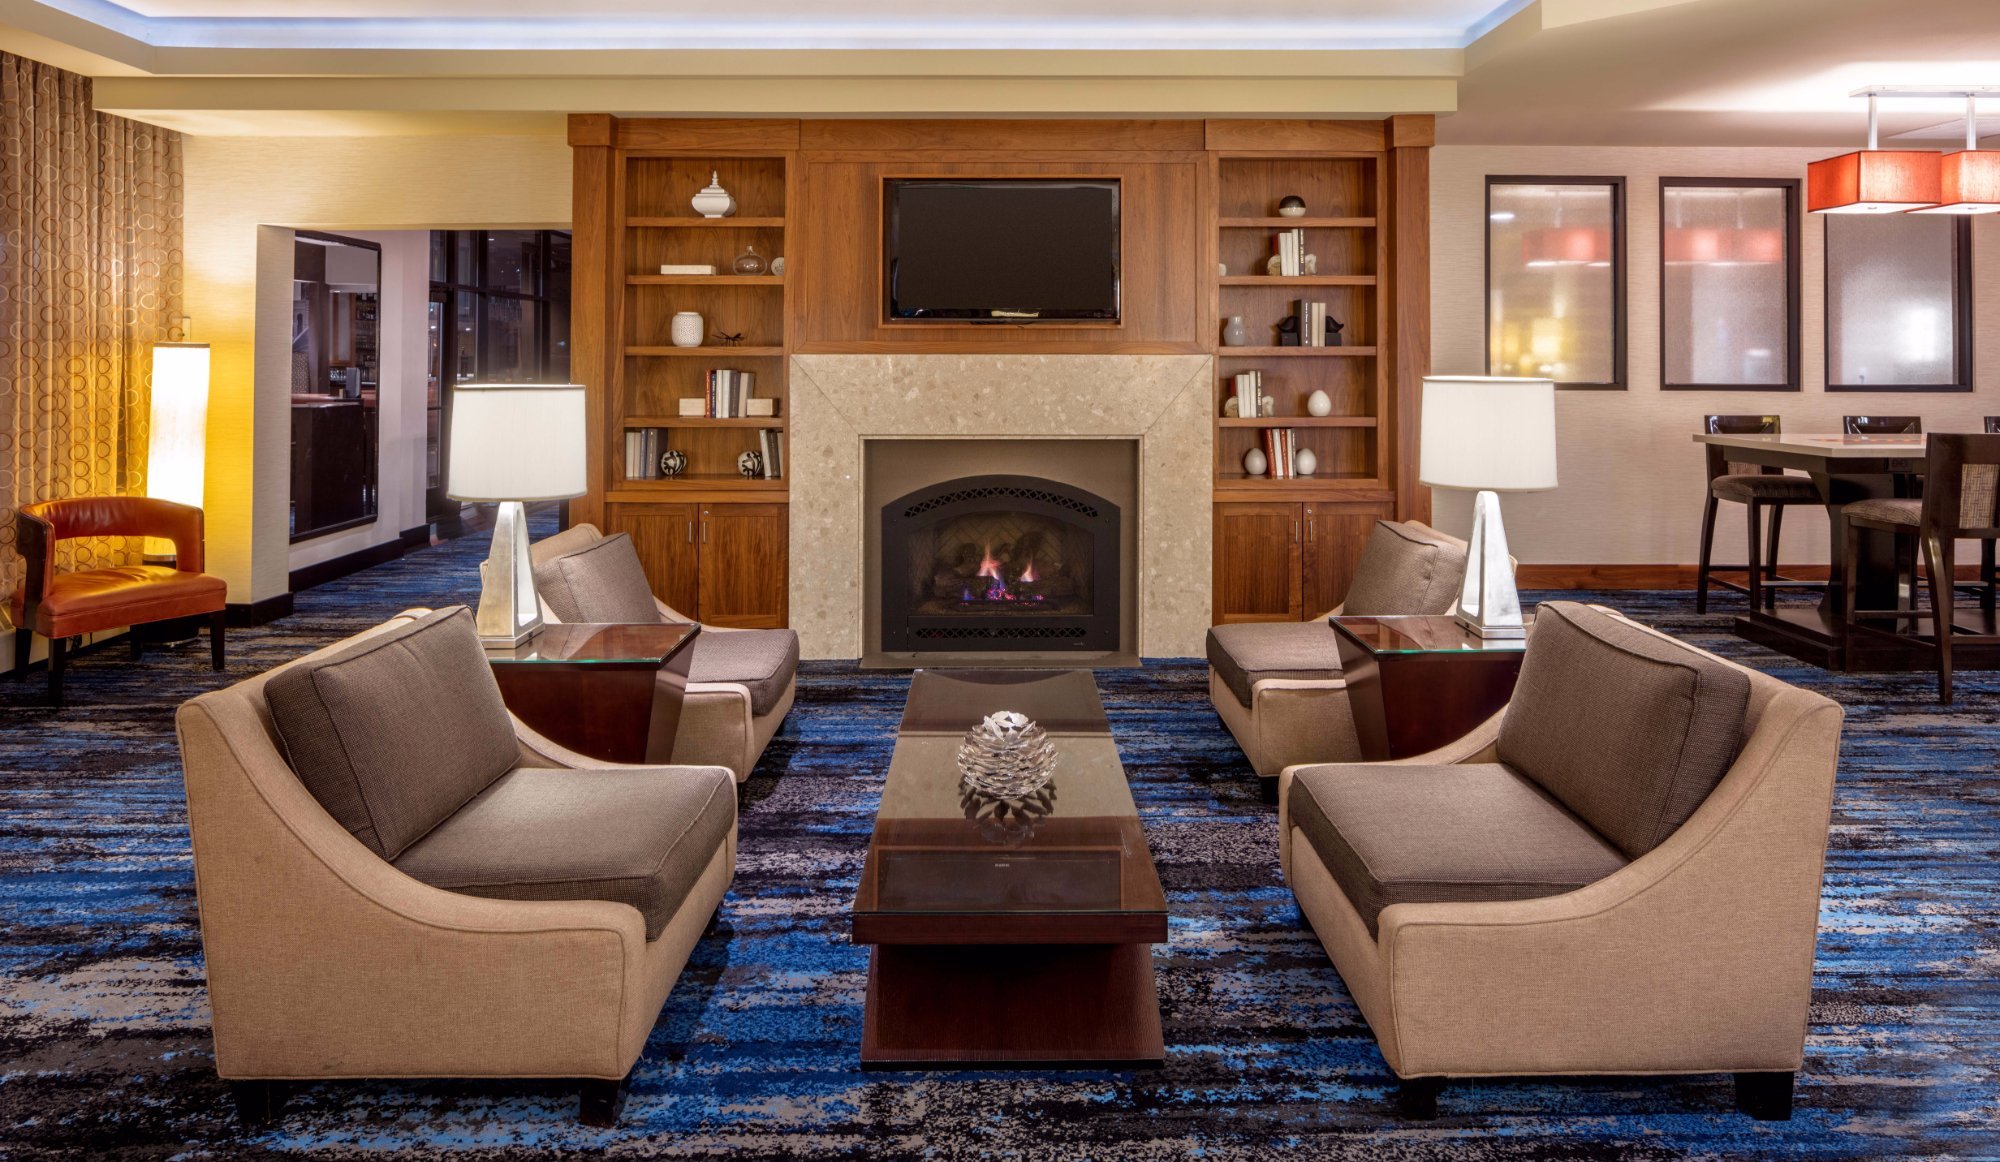 Photo of DoubleTree Suites by Hilton Hotel Minneapolis, Minneapolis, MN